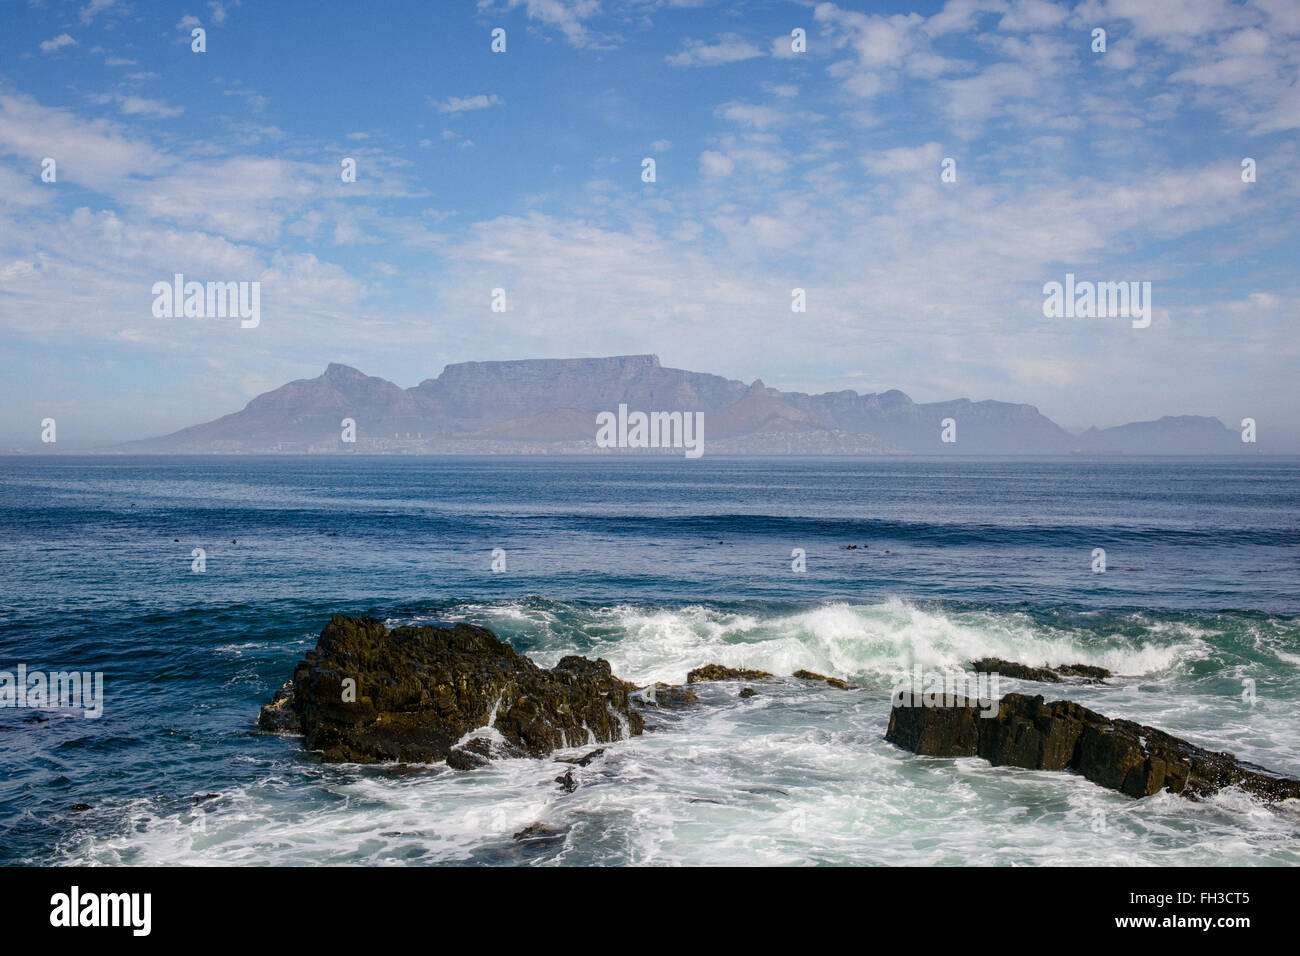 Vue de la ville du Cap et la montagne de la table de Robben Island Banque D'Images